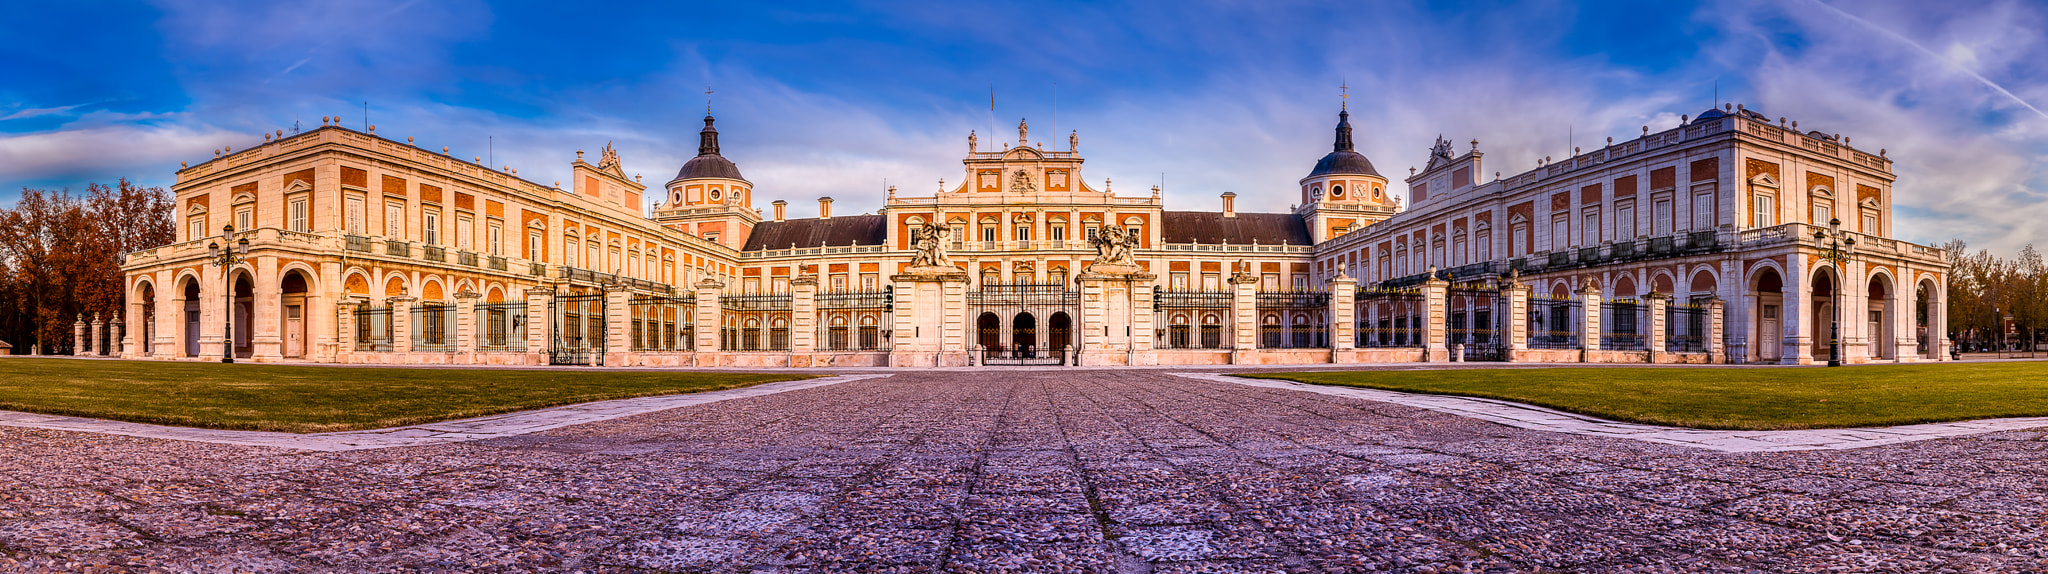 Aranjuez Royal Palace II - Palacio Real de Aranjuez II